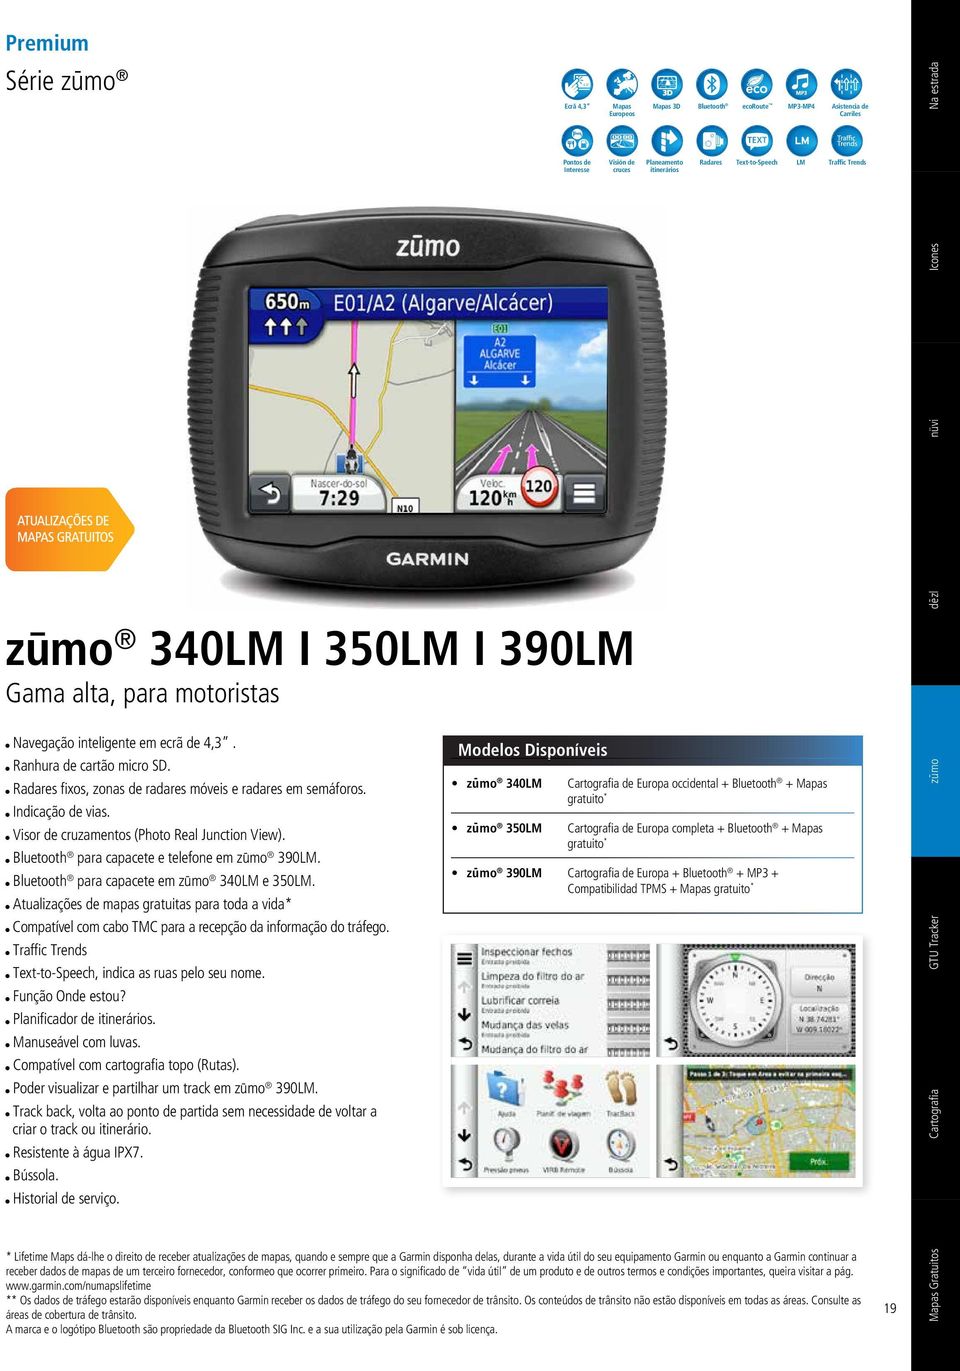 Bluetooth para capacete em zū mo 340LM e 350LM. Atualizações de mapas gratuitas para toda a vida* Compatível com cabo TMC para a recepção da informação do tráfego.